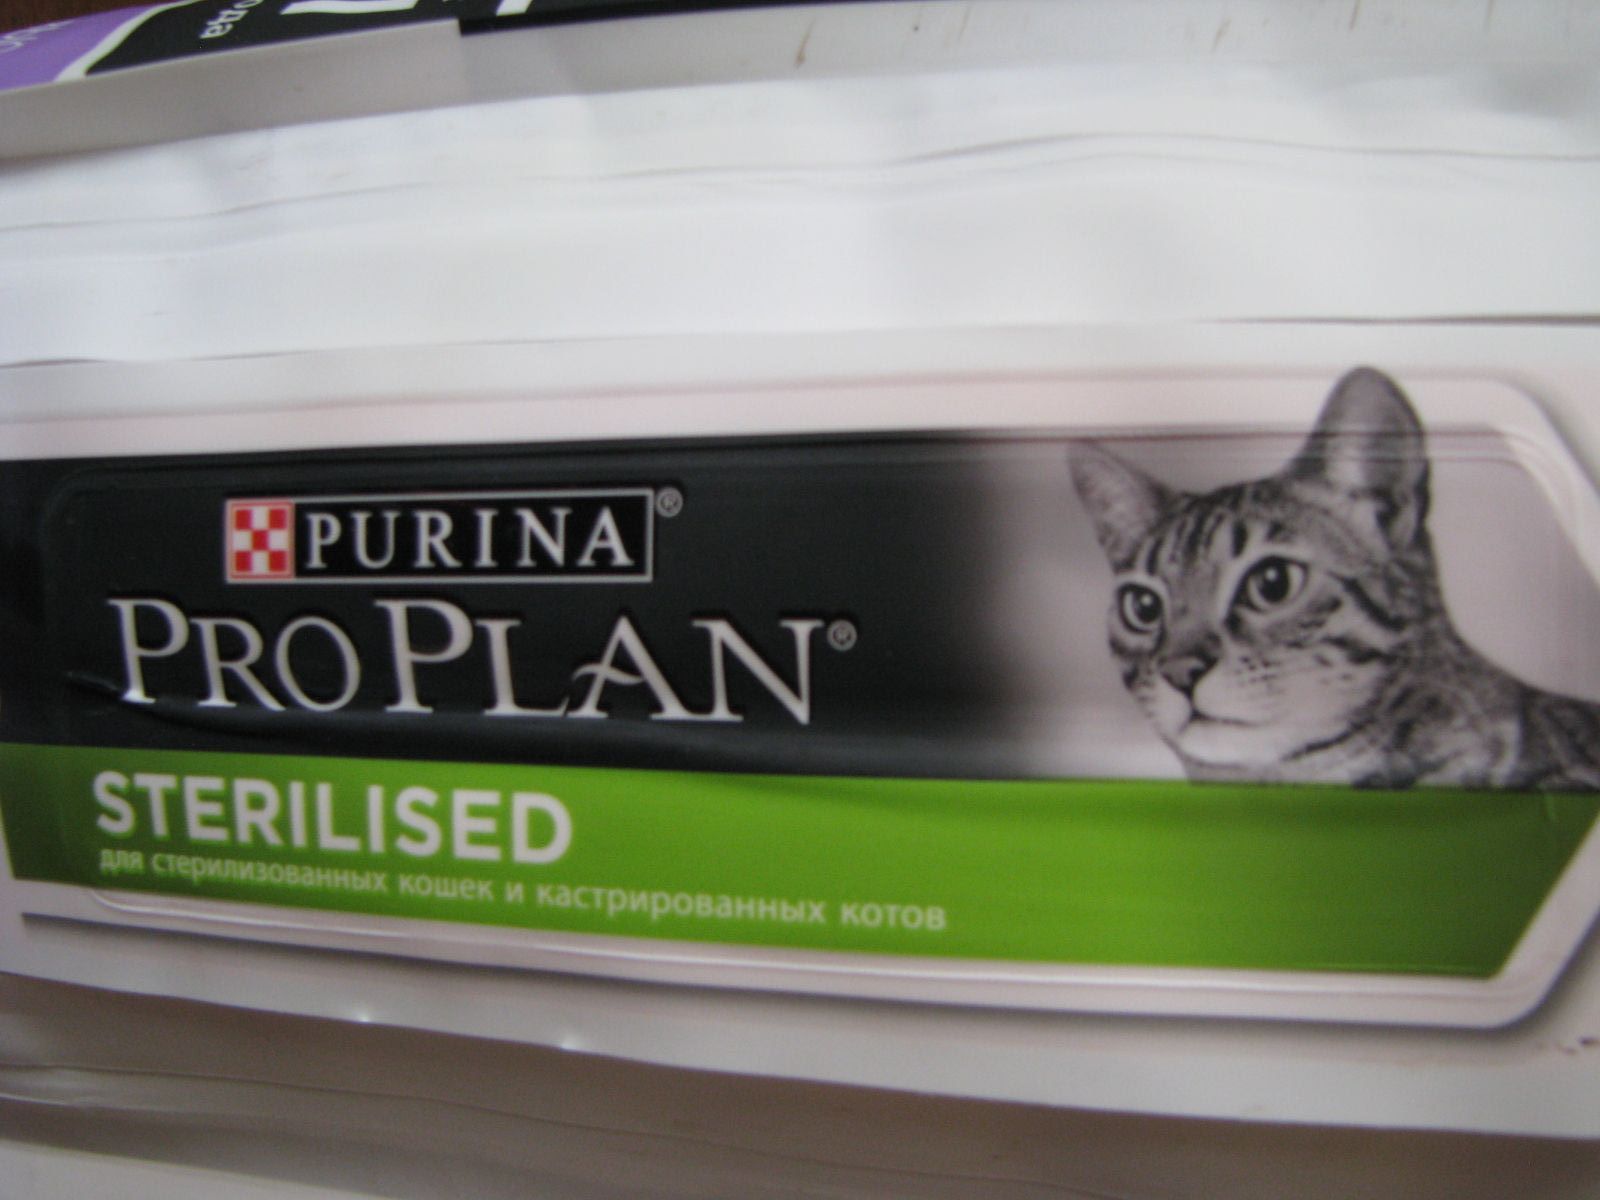 Pro plan для стерилизованных взрослых кошек